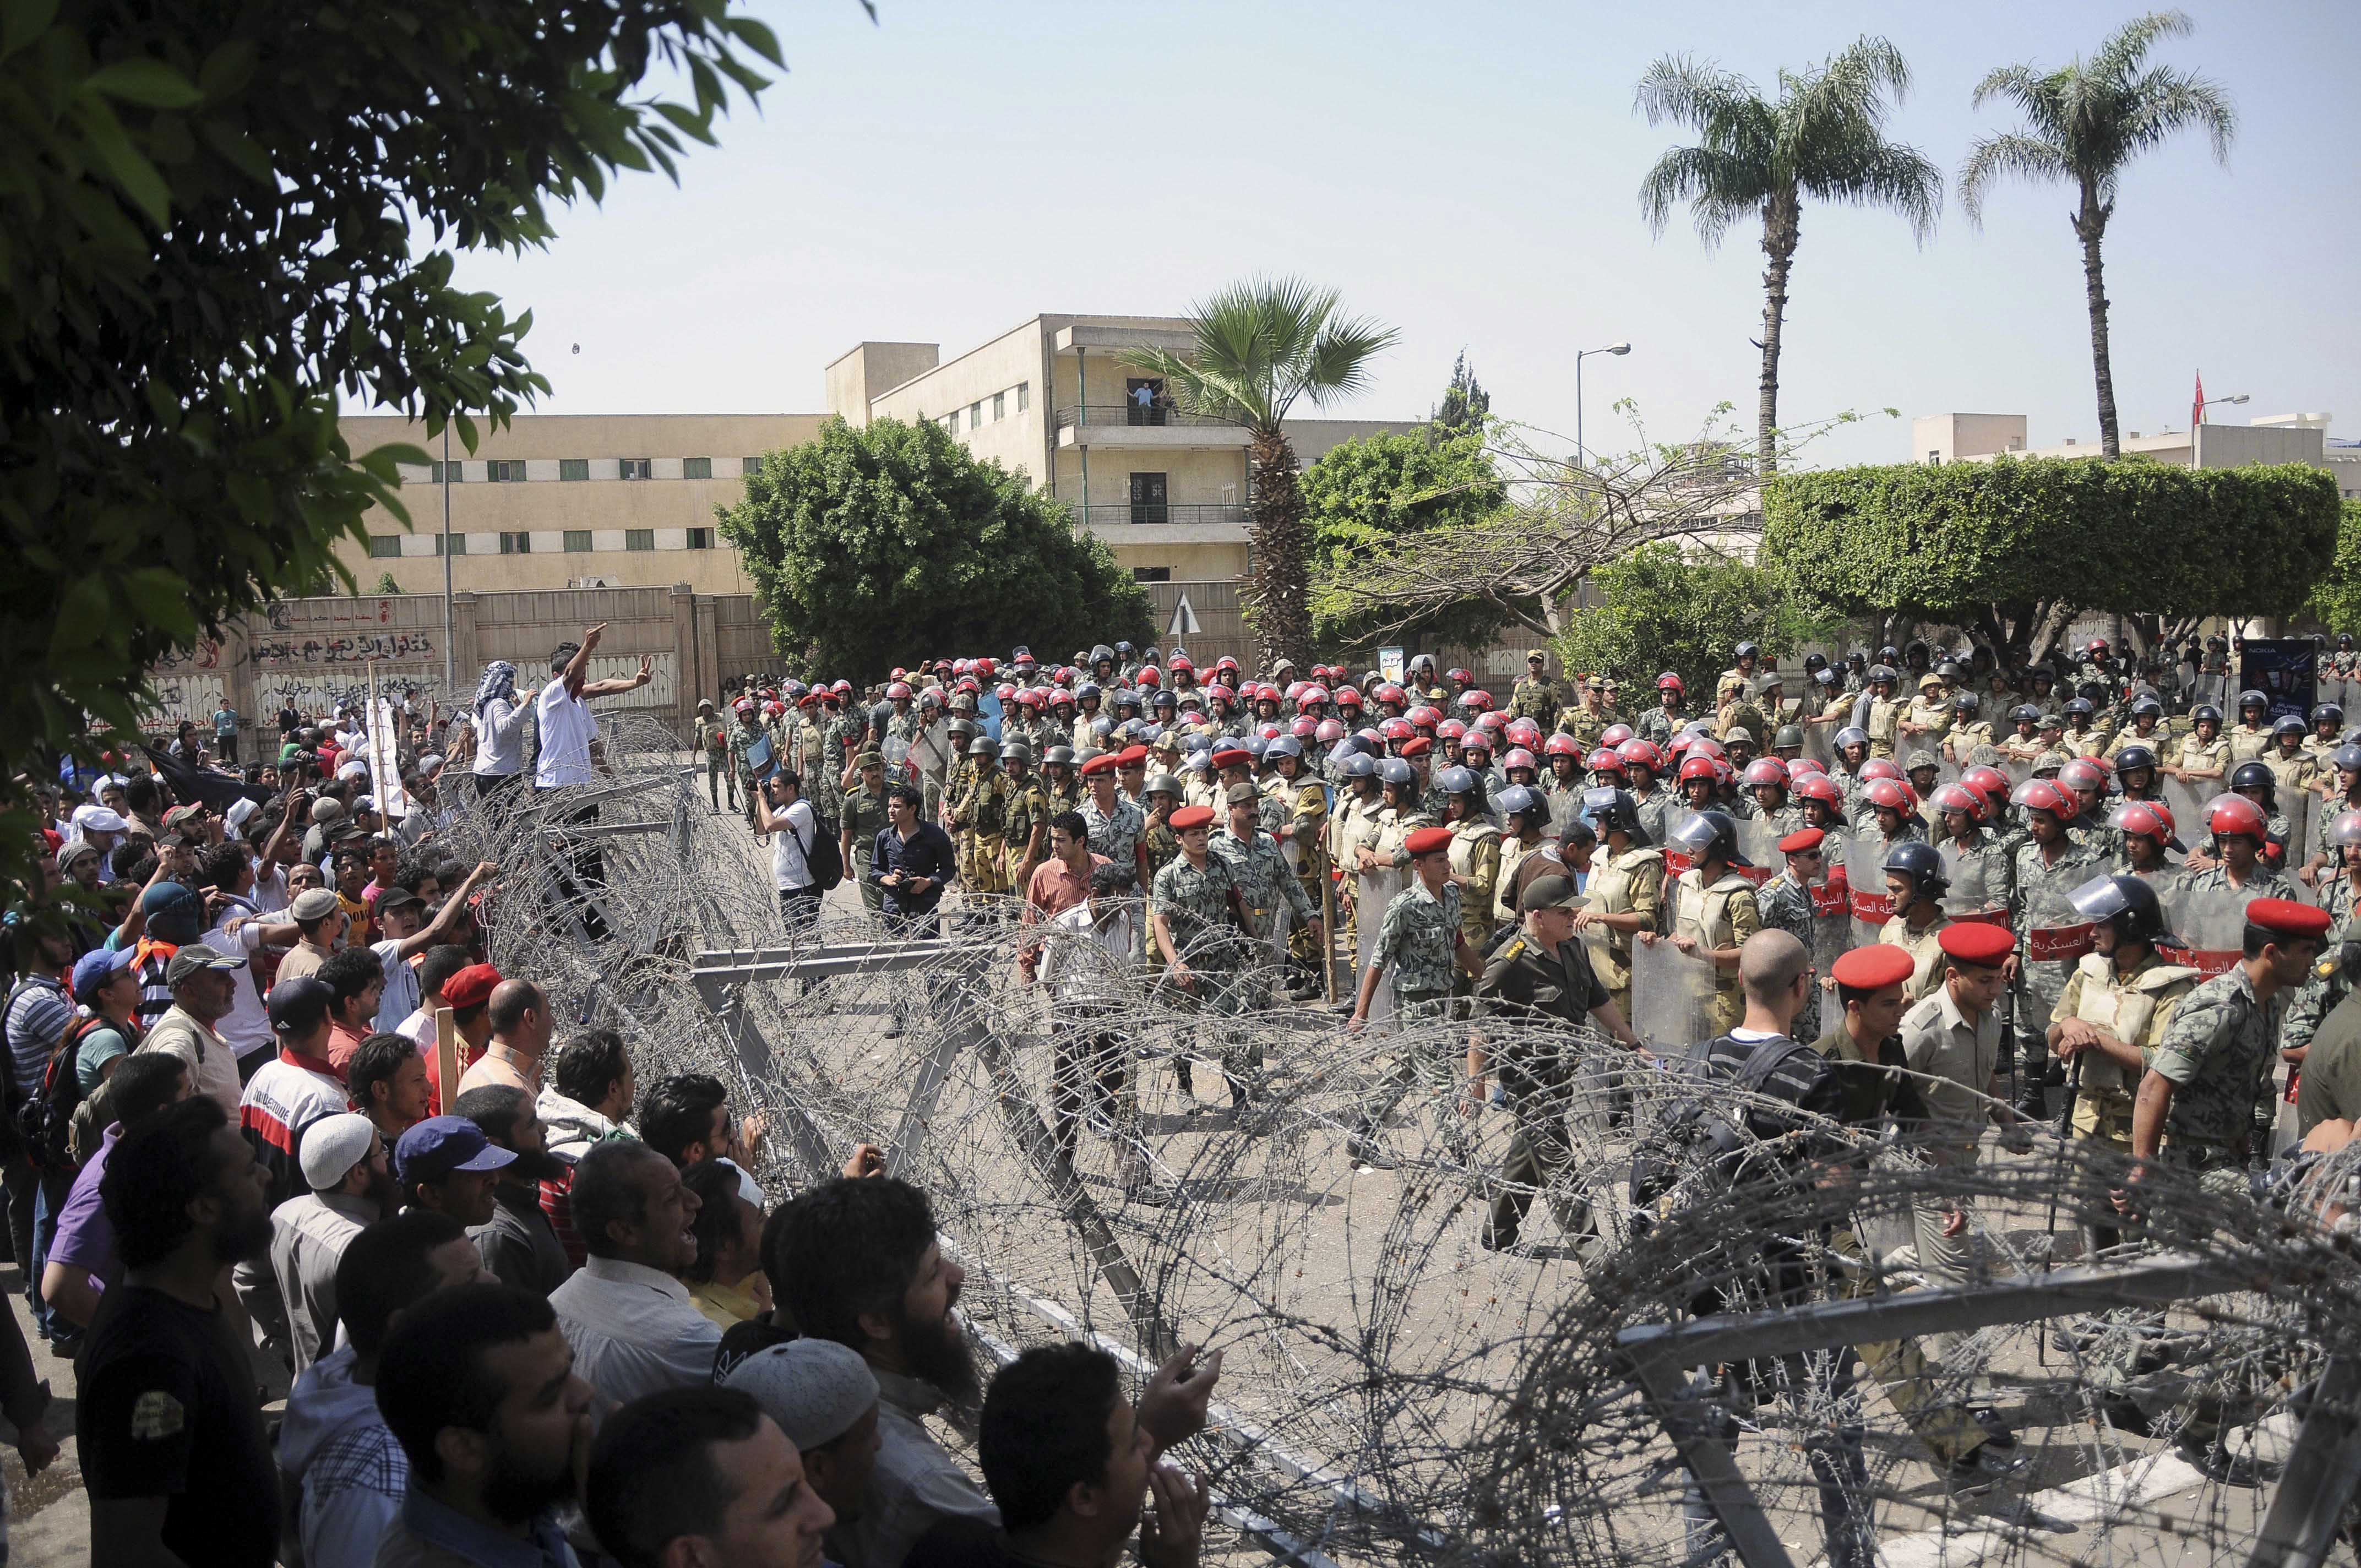 Taggtråd mellan demonstranter och säkerhetsstyrkor efter att elva personer dödades i en demonstration dagen innan.